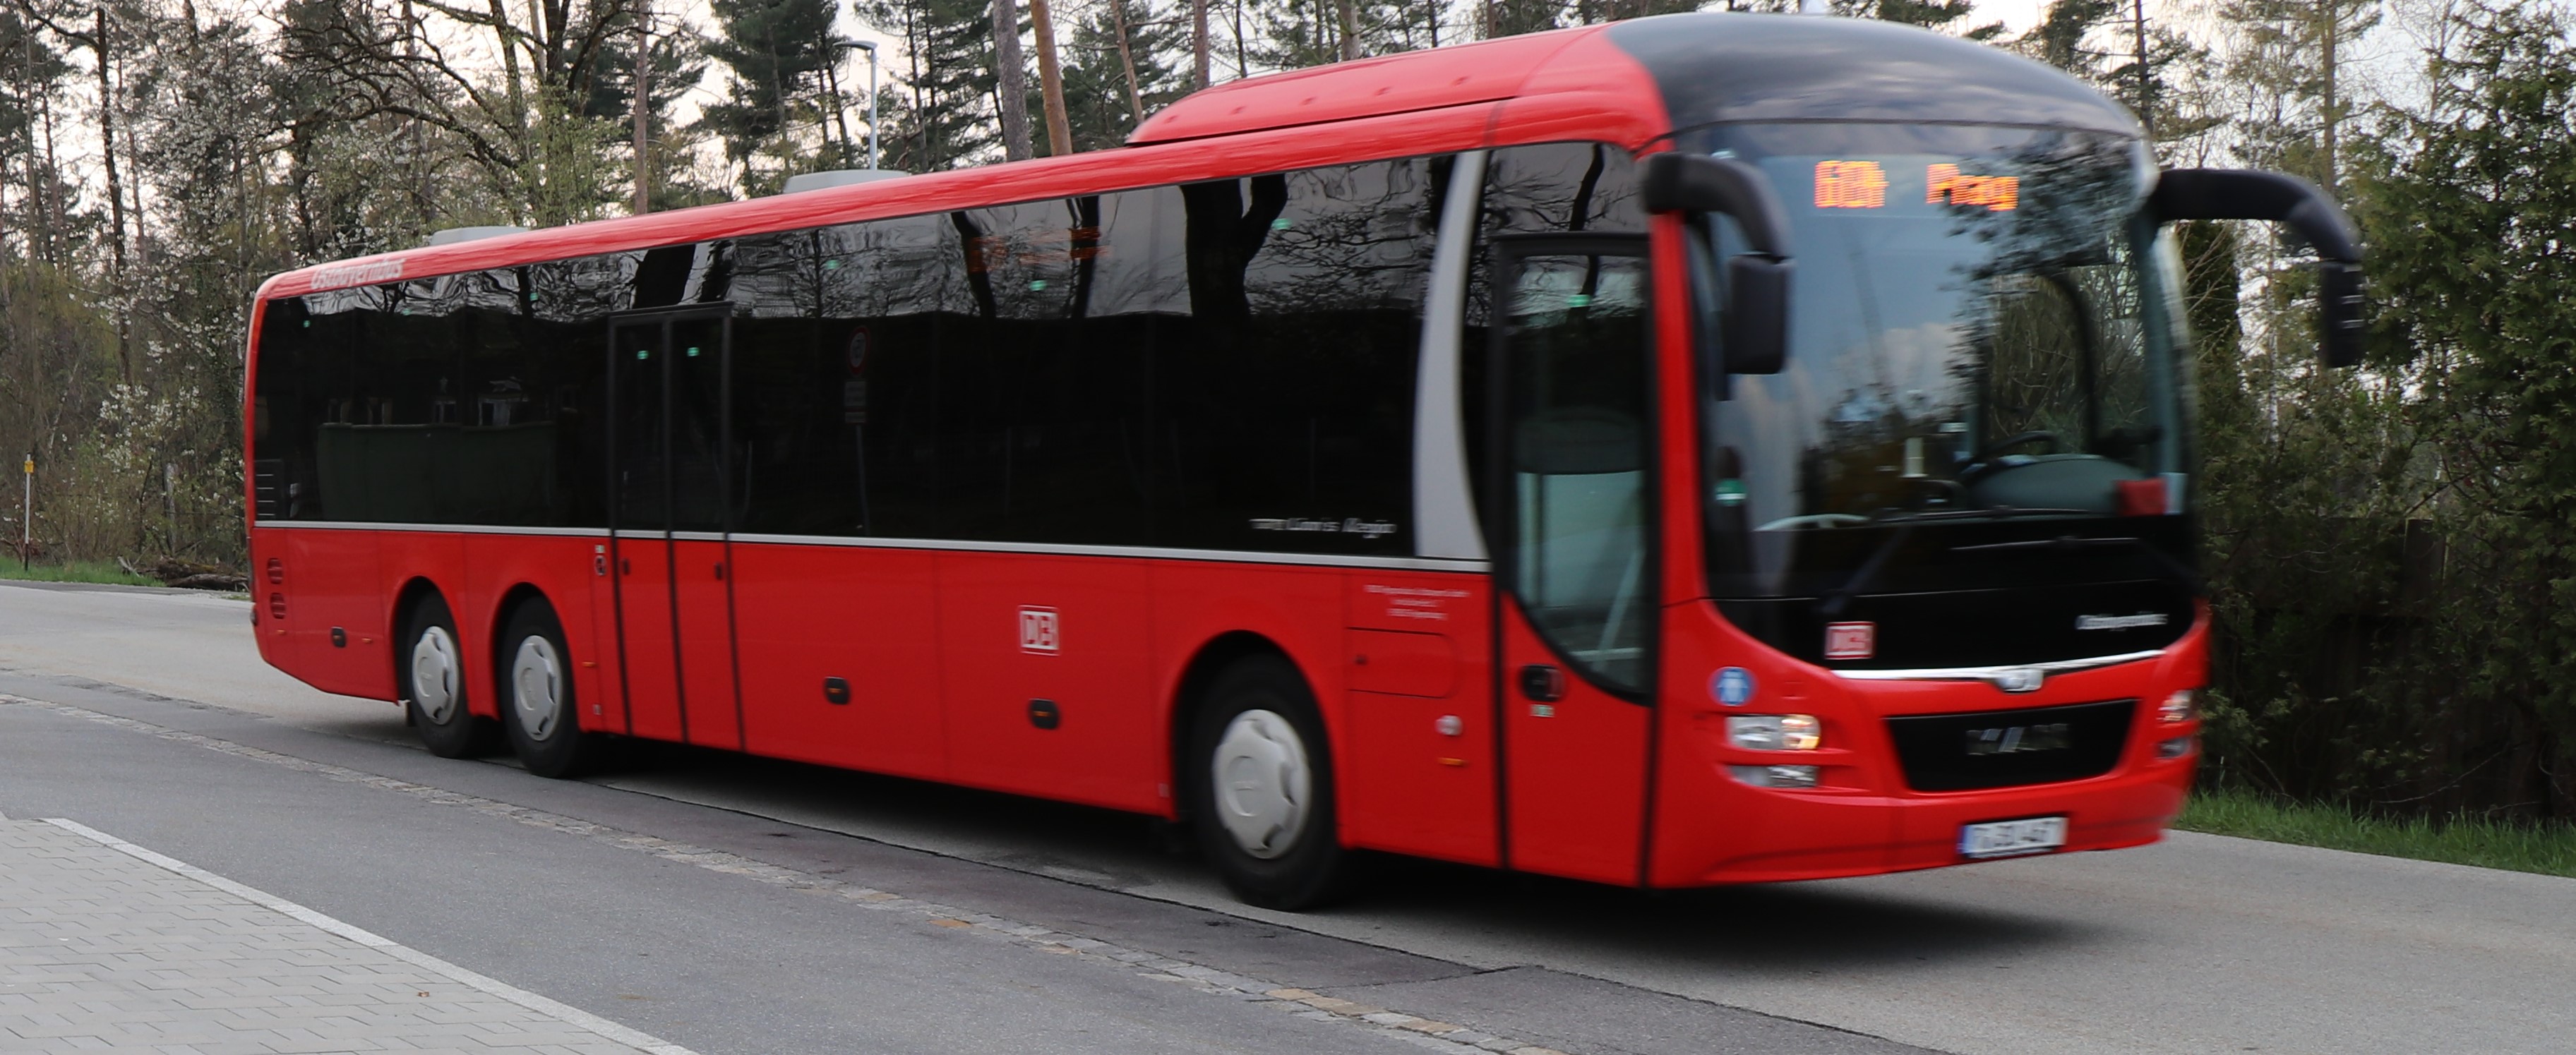 Corona-Regeln bestmöglich umsetzen: Landkreis setzt auf Verstärker-Flotte für Schülerbeförderung – Bereits 30 Zusatzbusse im Einsatz